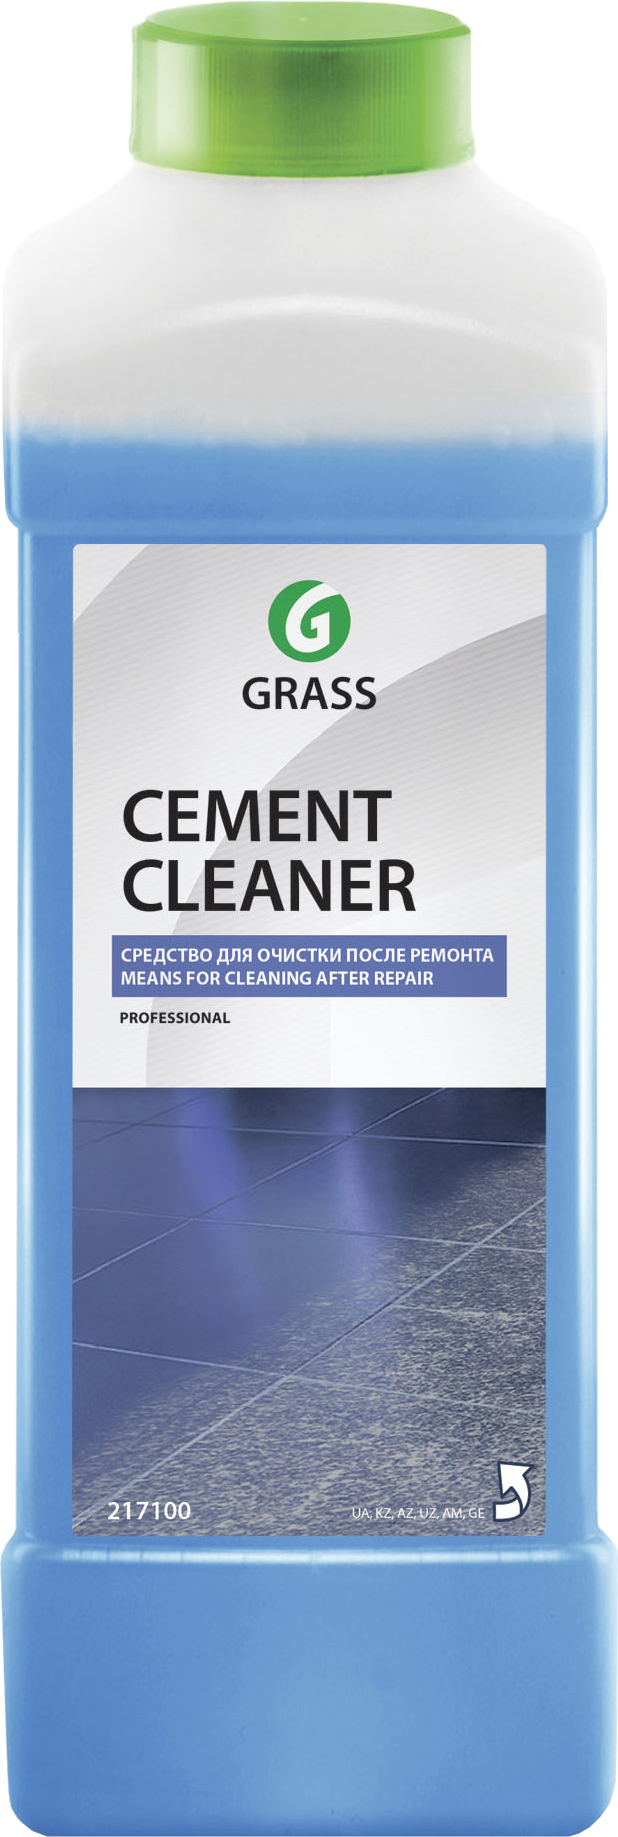 Промышленный очиститель Grass Cement Cleaner после ремонта, 1 л